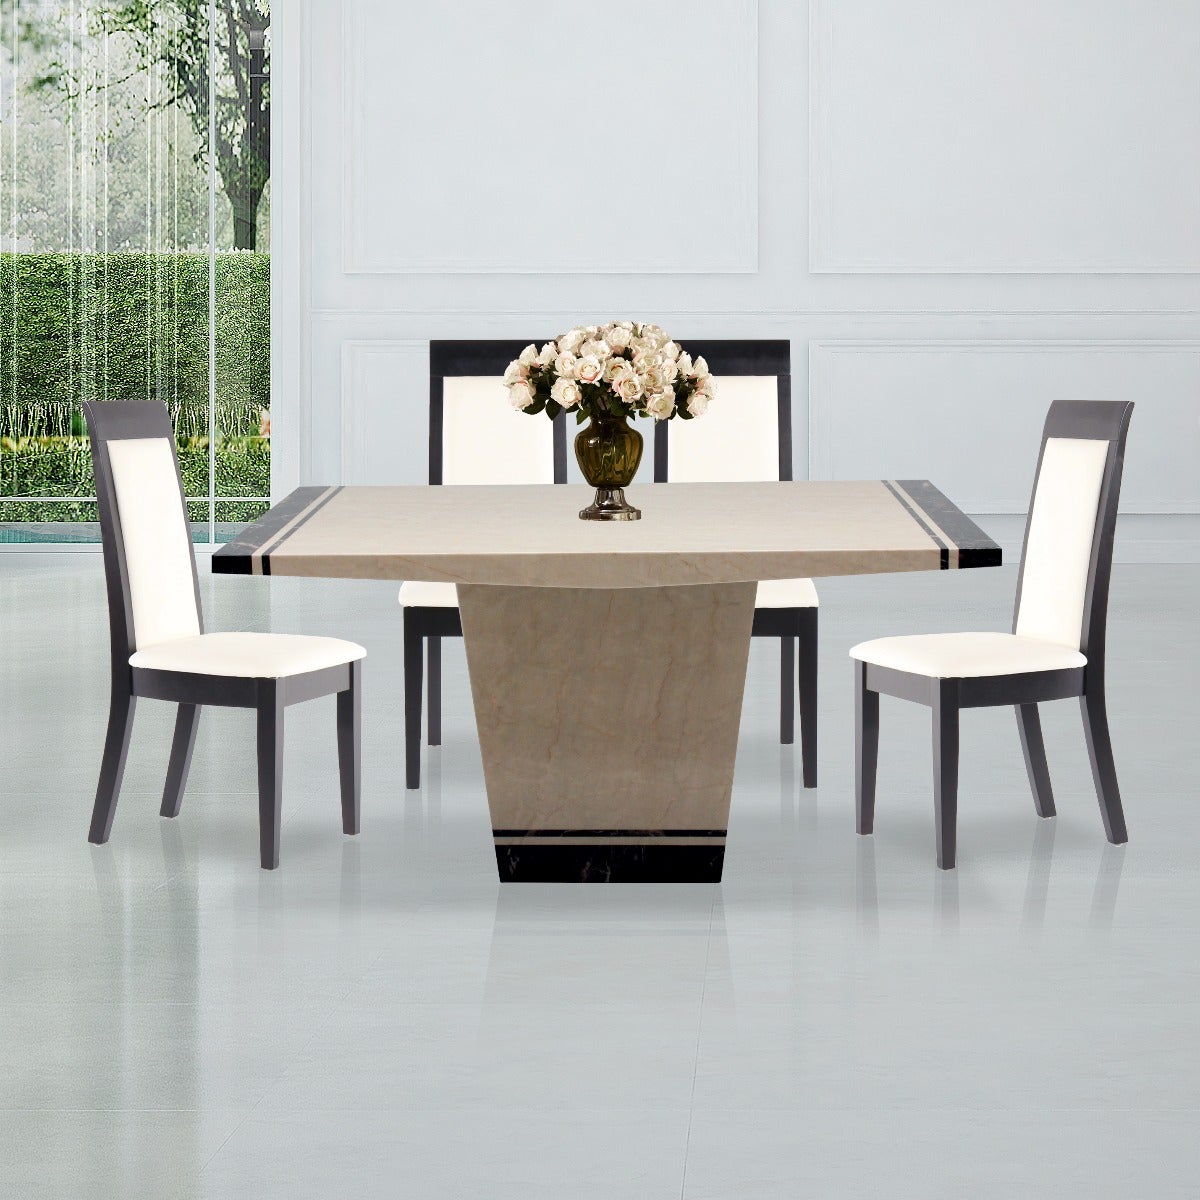 ชุดโต๊ะอาหาร รุ่น Famira & เก้าอี้ รุ่น Setna#3 สีครีม01